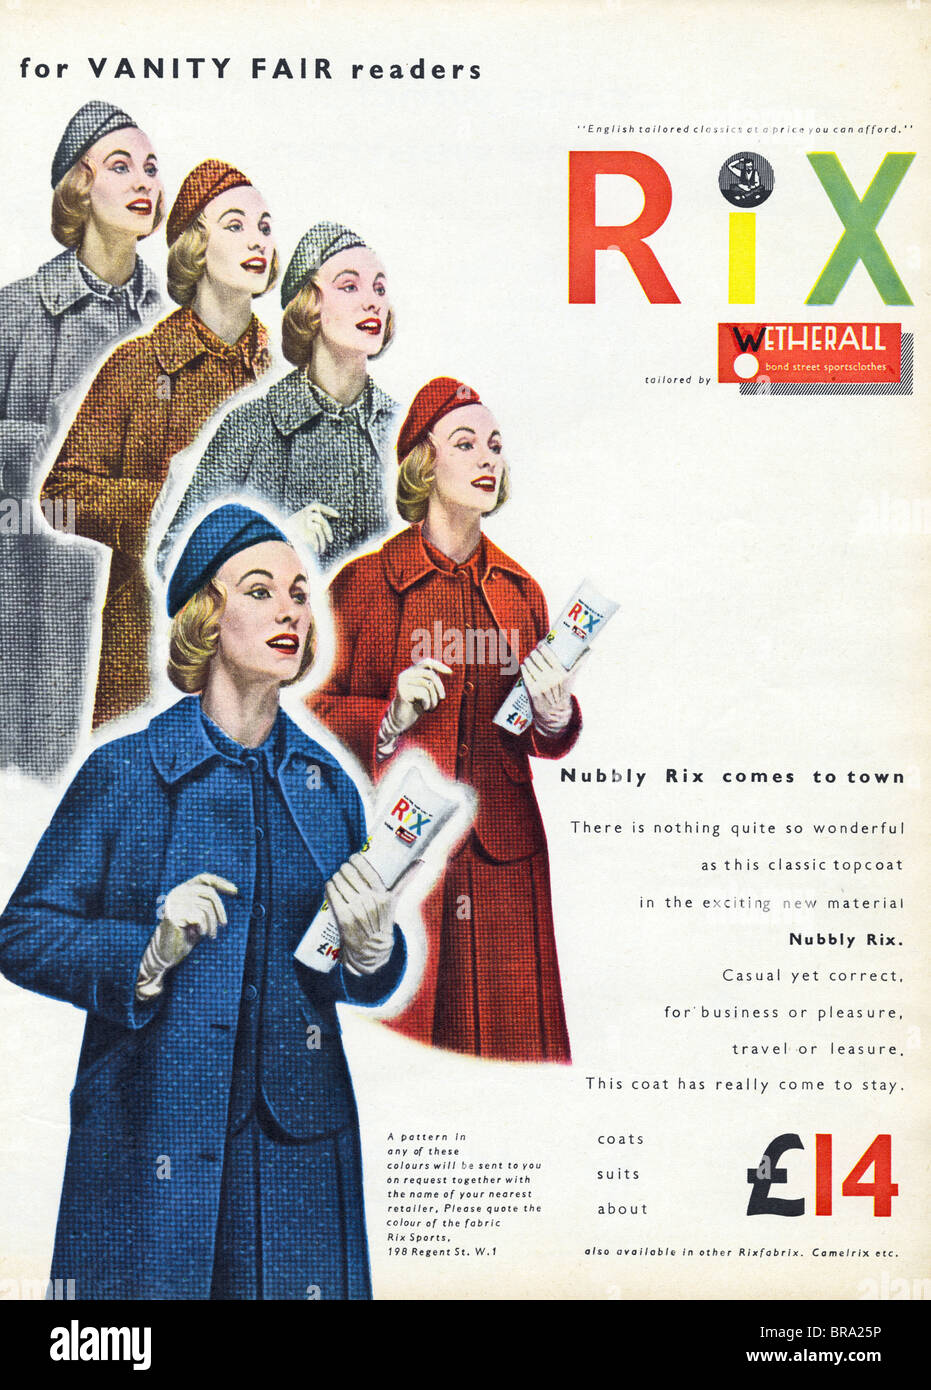 Mode-Anzeige für Rix Wetherall klassische Damen Mantel ca. 1959  Stockfotografie - Alamy